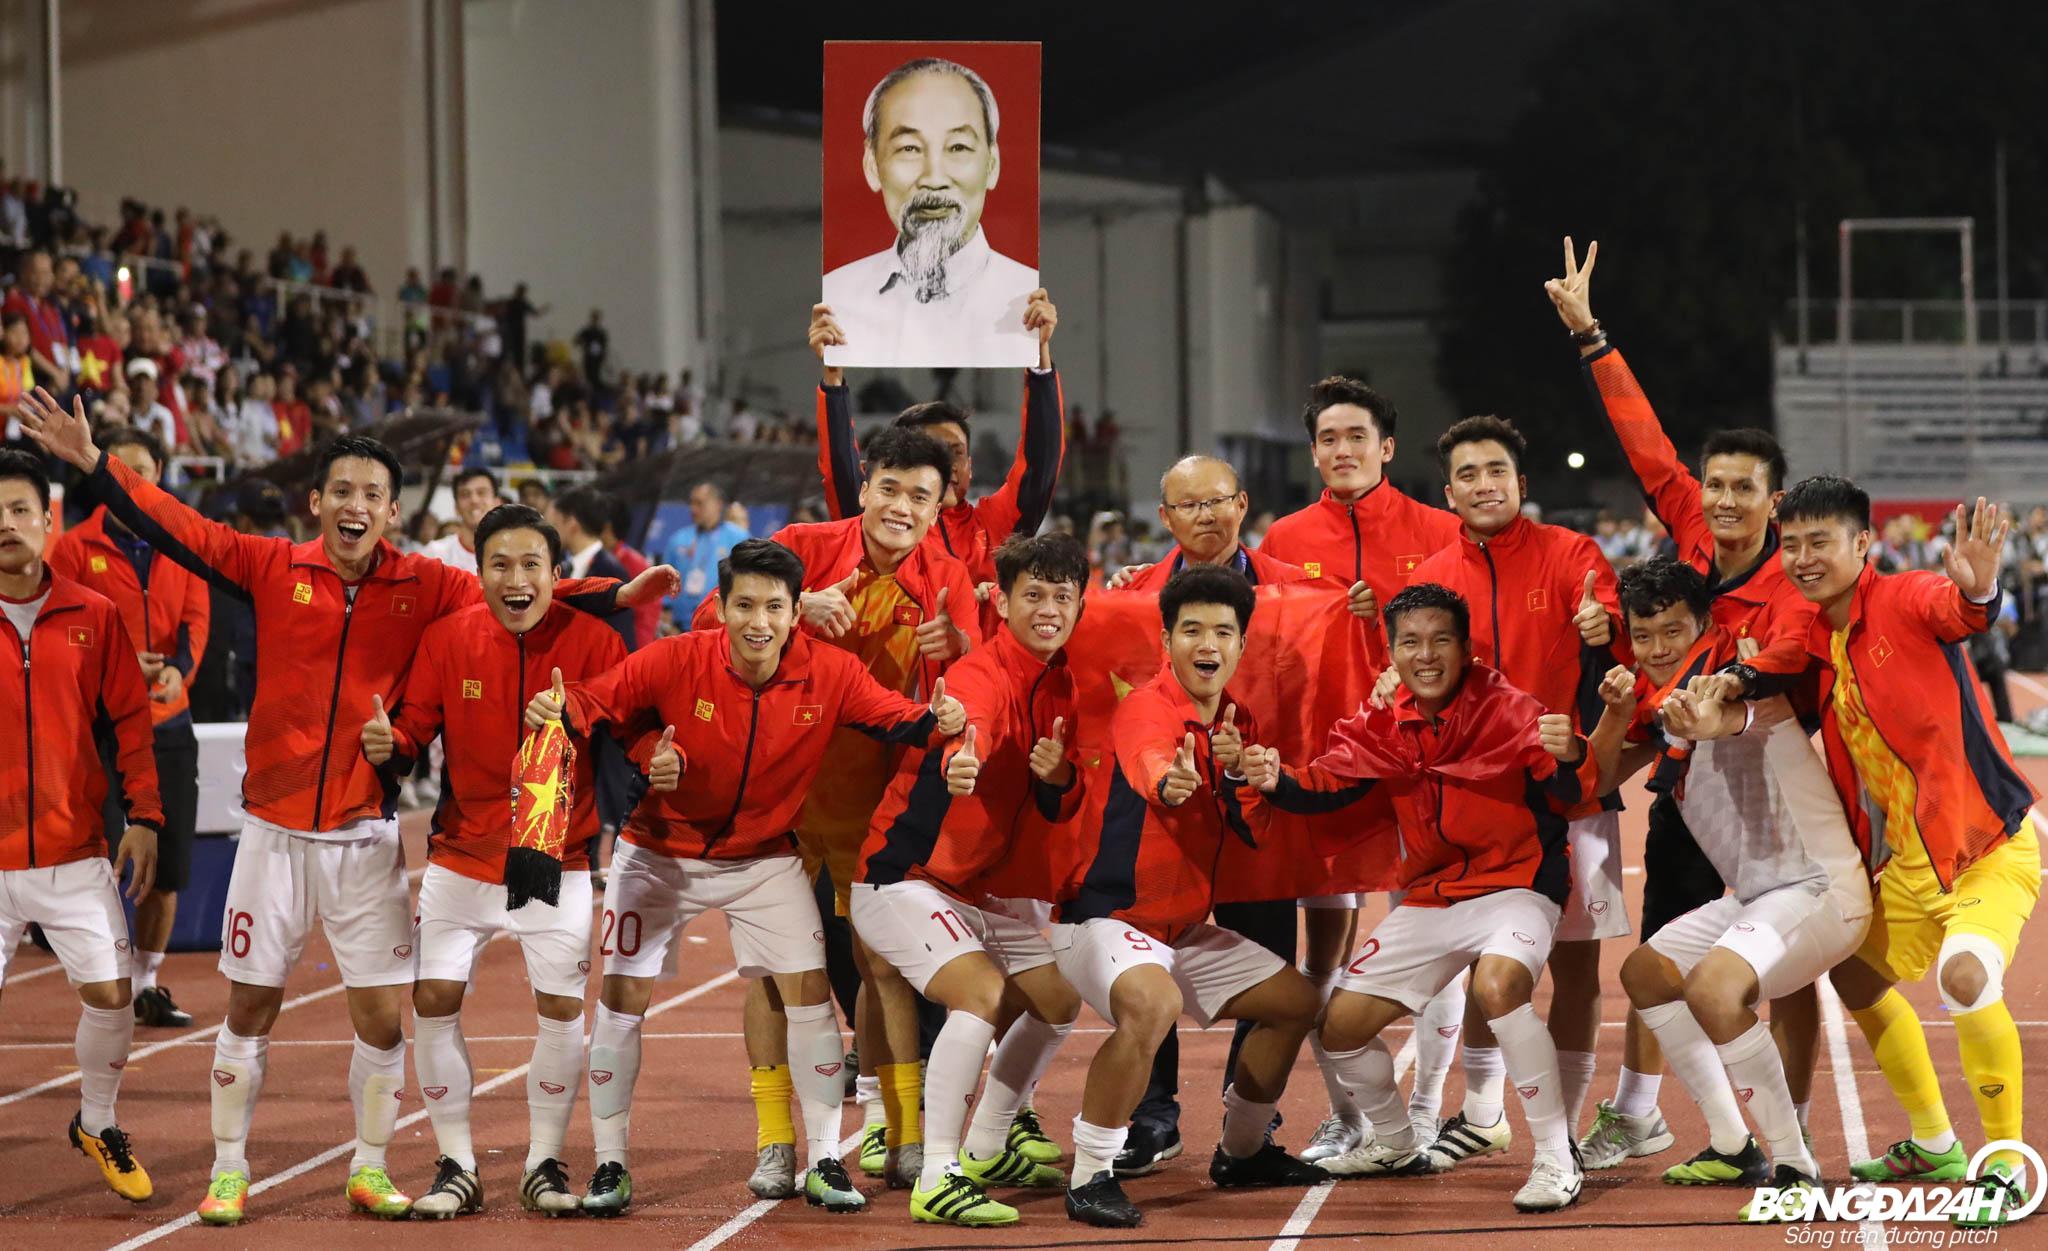 SEA Games, thành công: Hãy xem hình ảnh liên quan đến SEA Games và cảm nhận thành công tuyệt vời mà đội tuyển Việt Nam đã đạt được. Những khoảnh khắc ấn tượng của những vận động viên tài ba sẽ khiến bạn phấn khích và tự hào về đất nước.